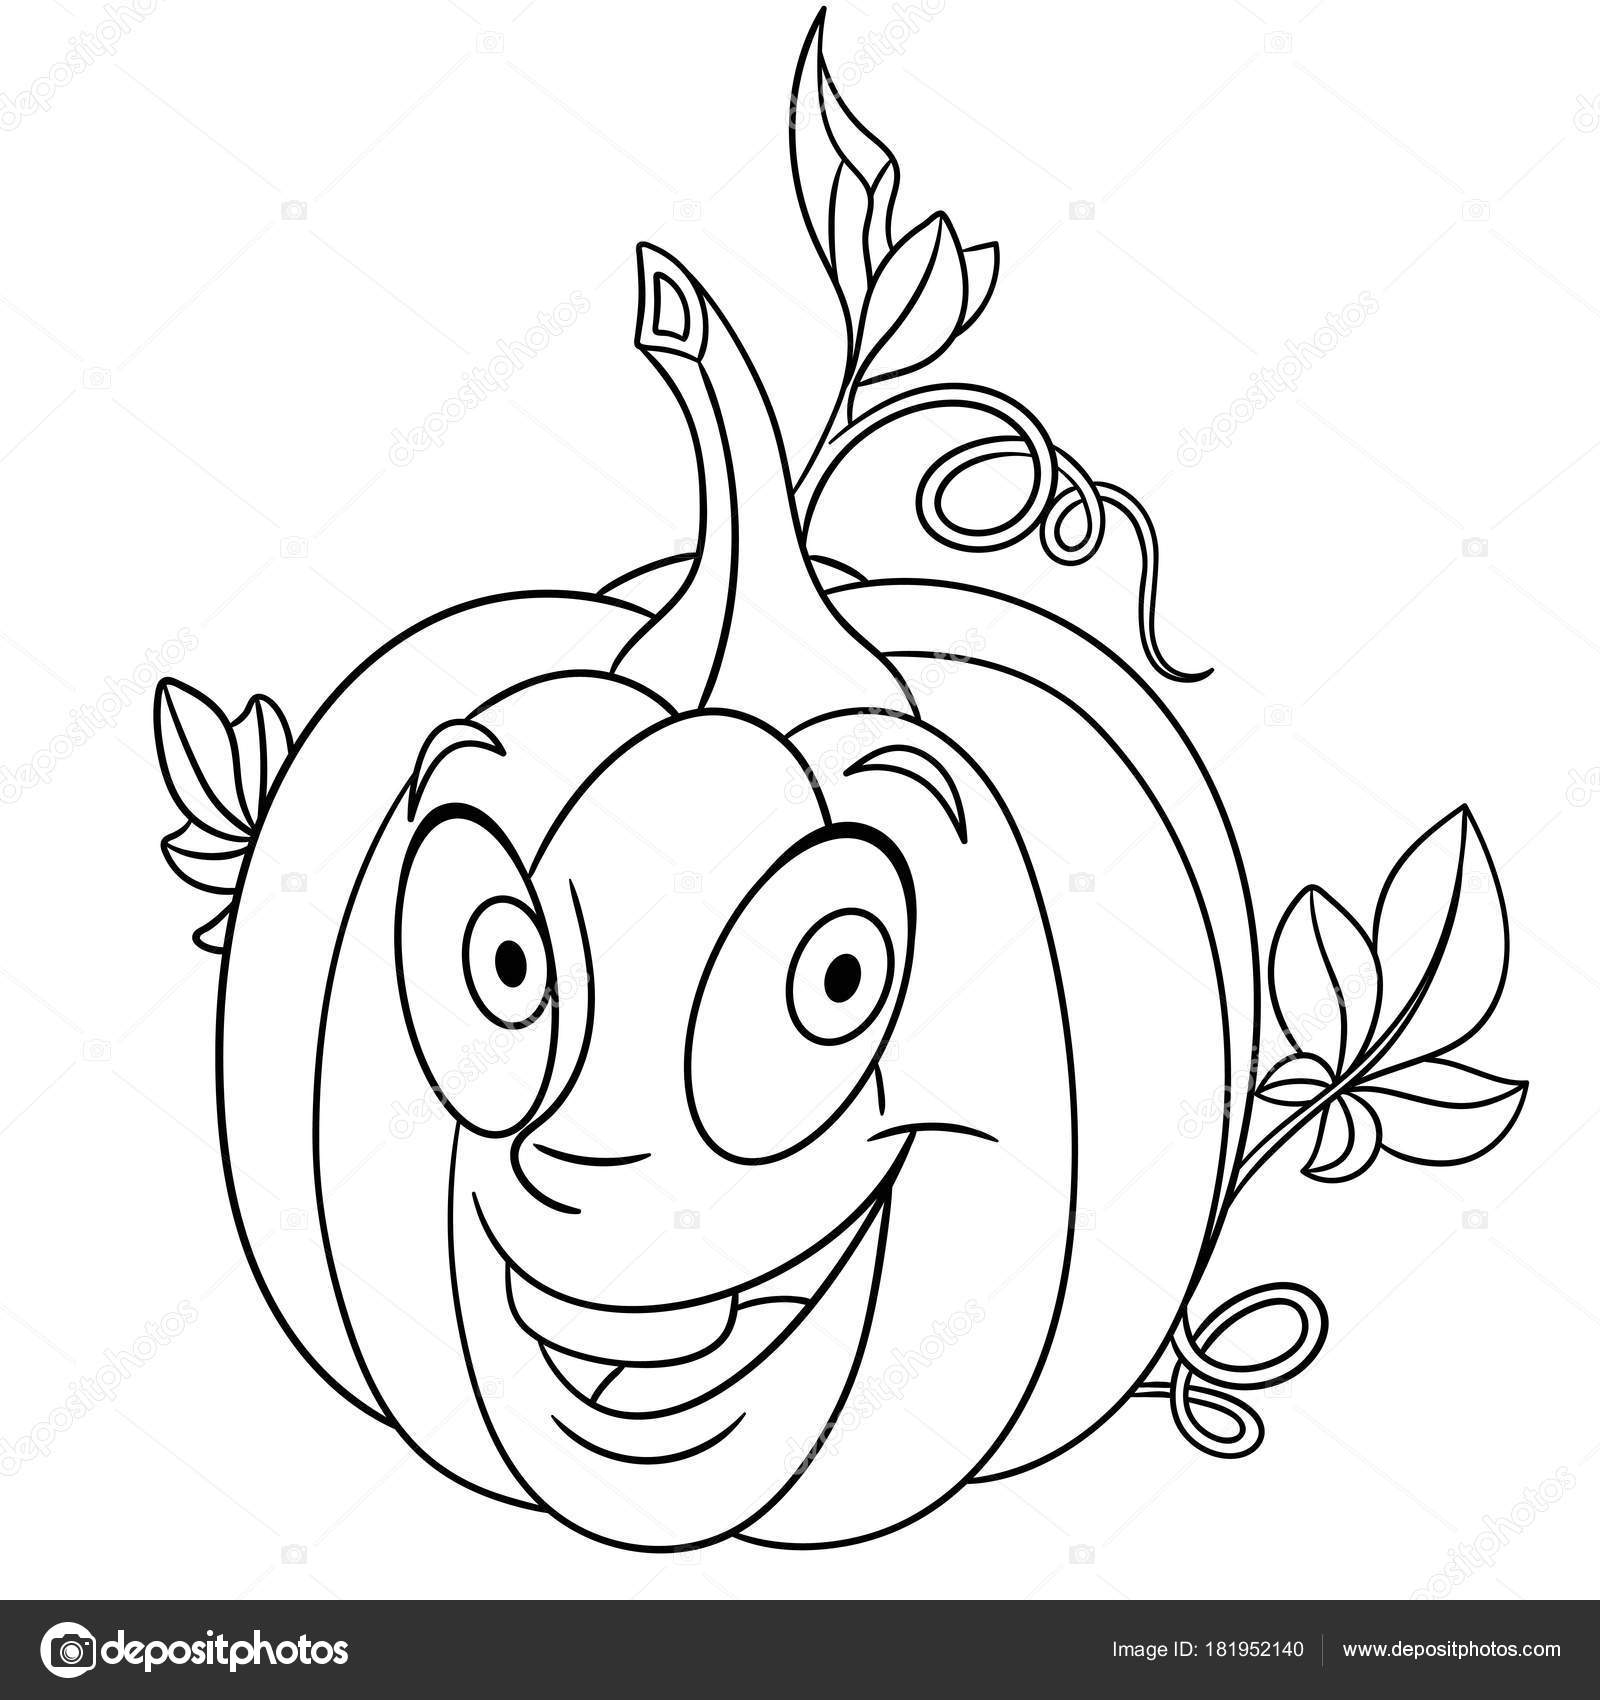 Coloring page cartoon pumpkin happy vegetable character eco food symbol stock vector by sybirko